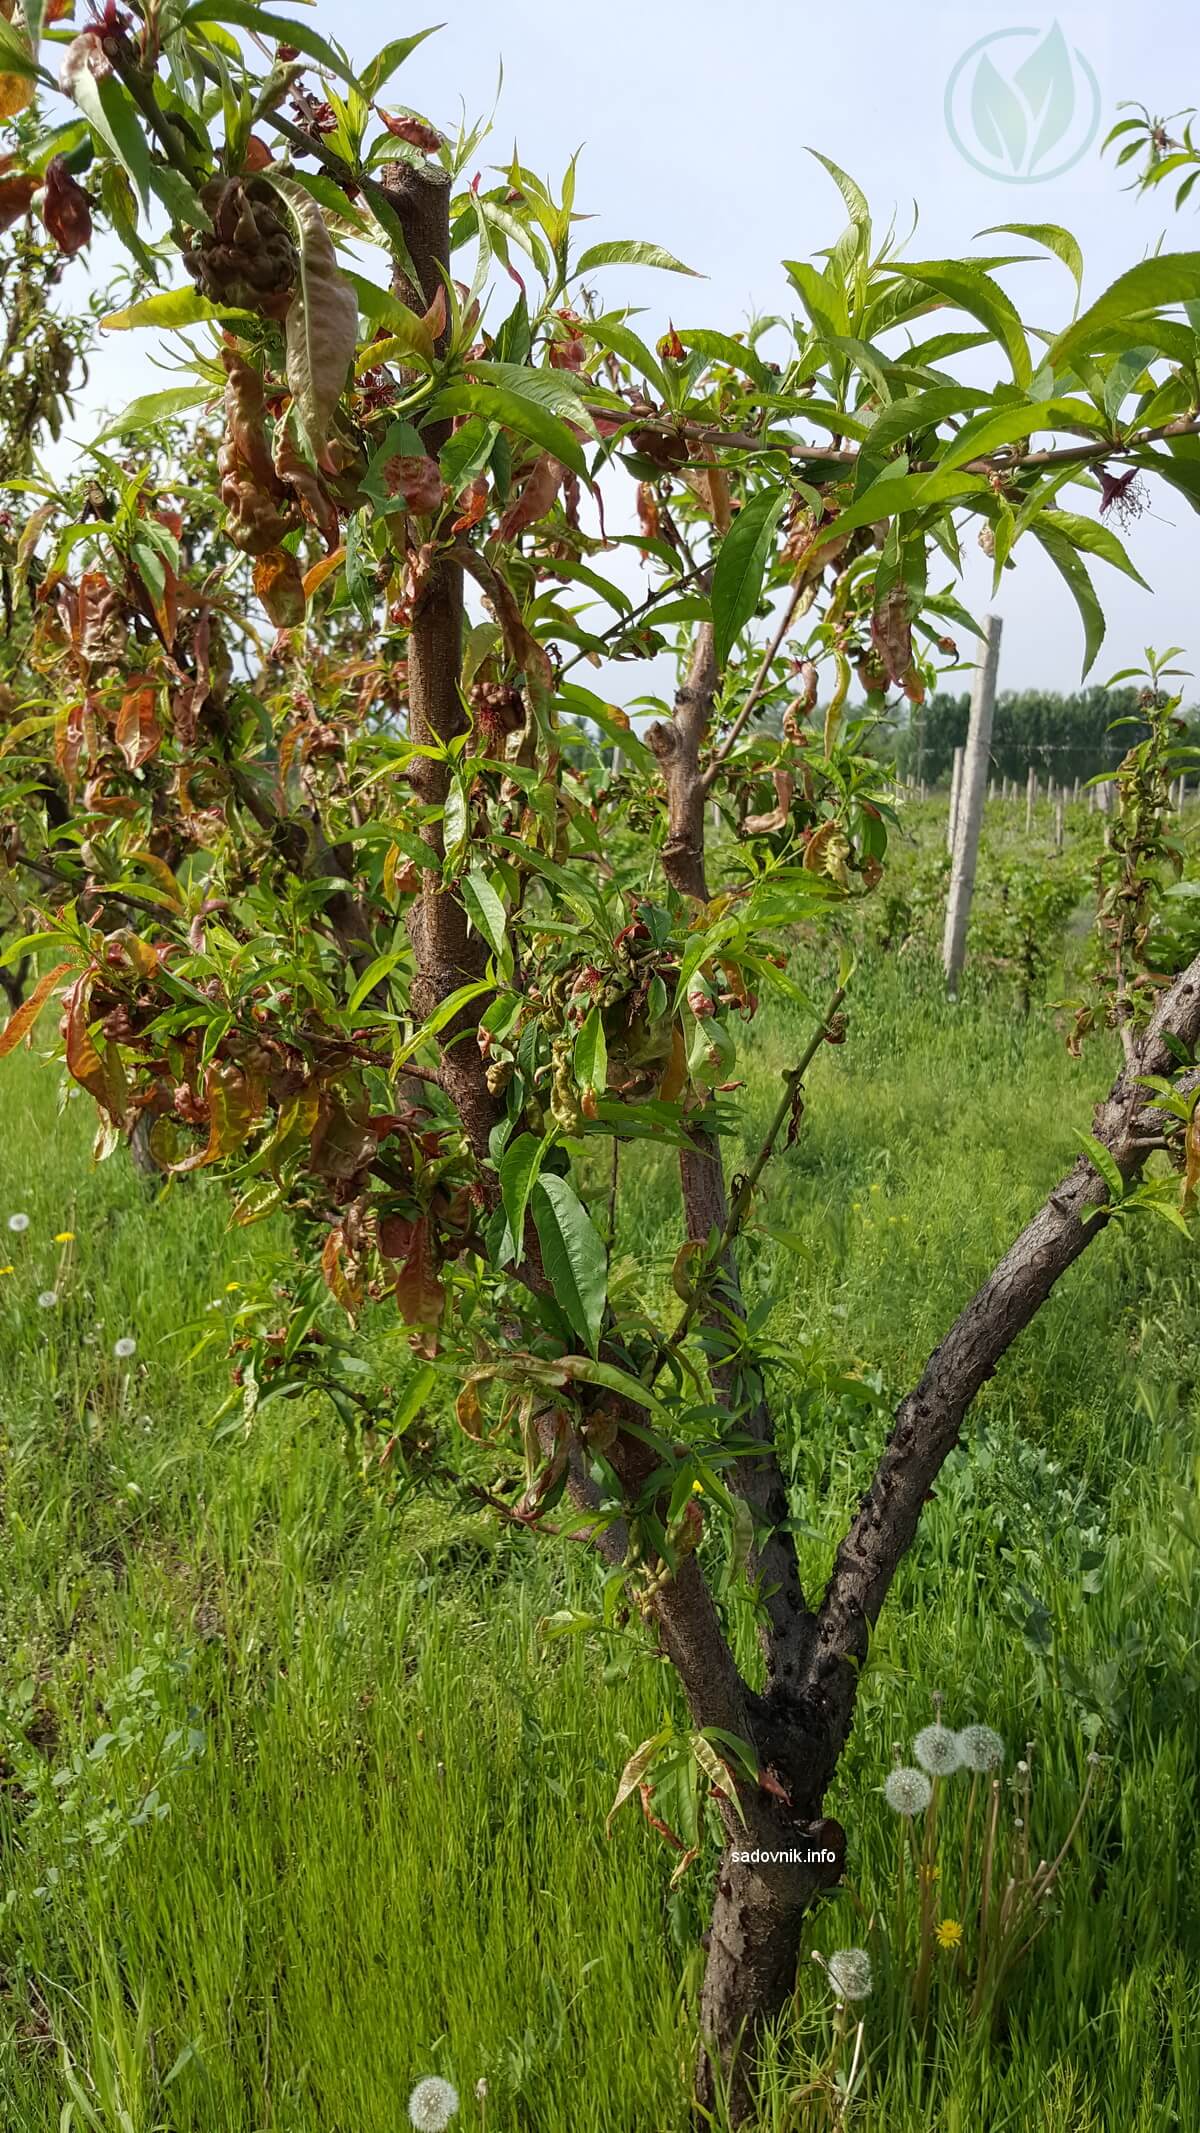 Курчавость листьев персика: что это за болезнь и как с ней бороться?